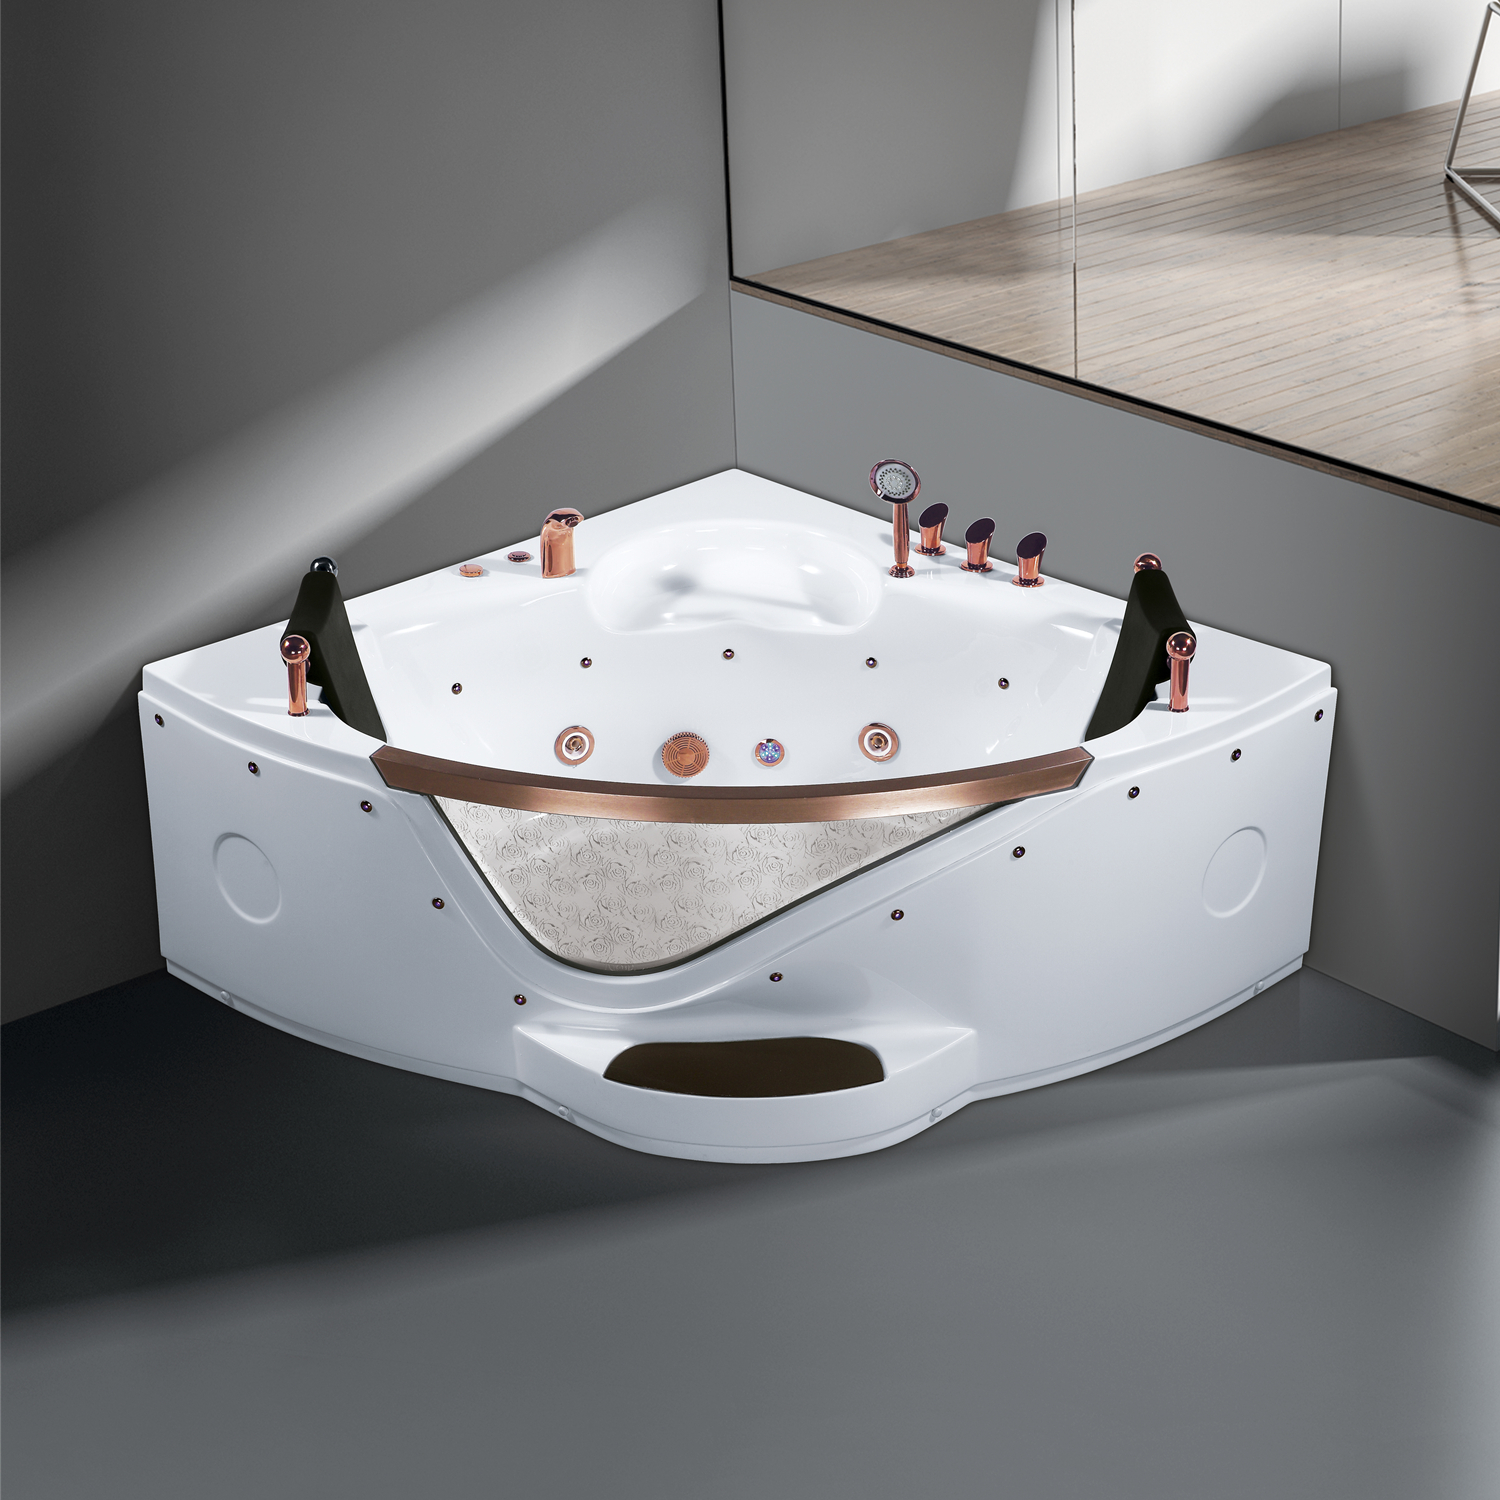 乐可意酒店家用亚克力浴缸1.5米扇形冲浪按摩泡泡浴恒温泡澡浴盆